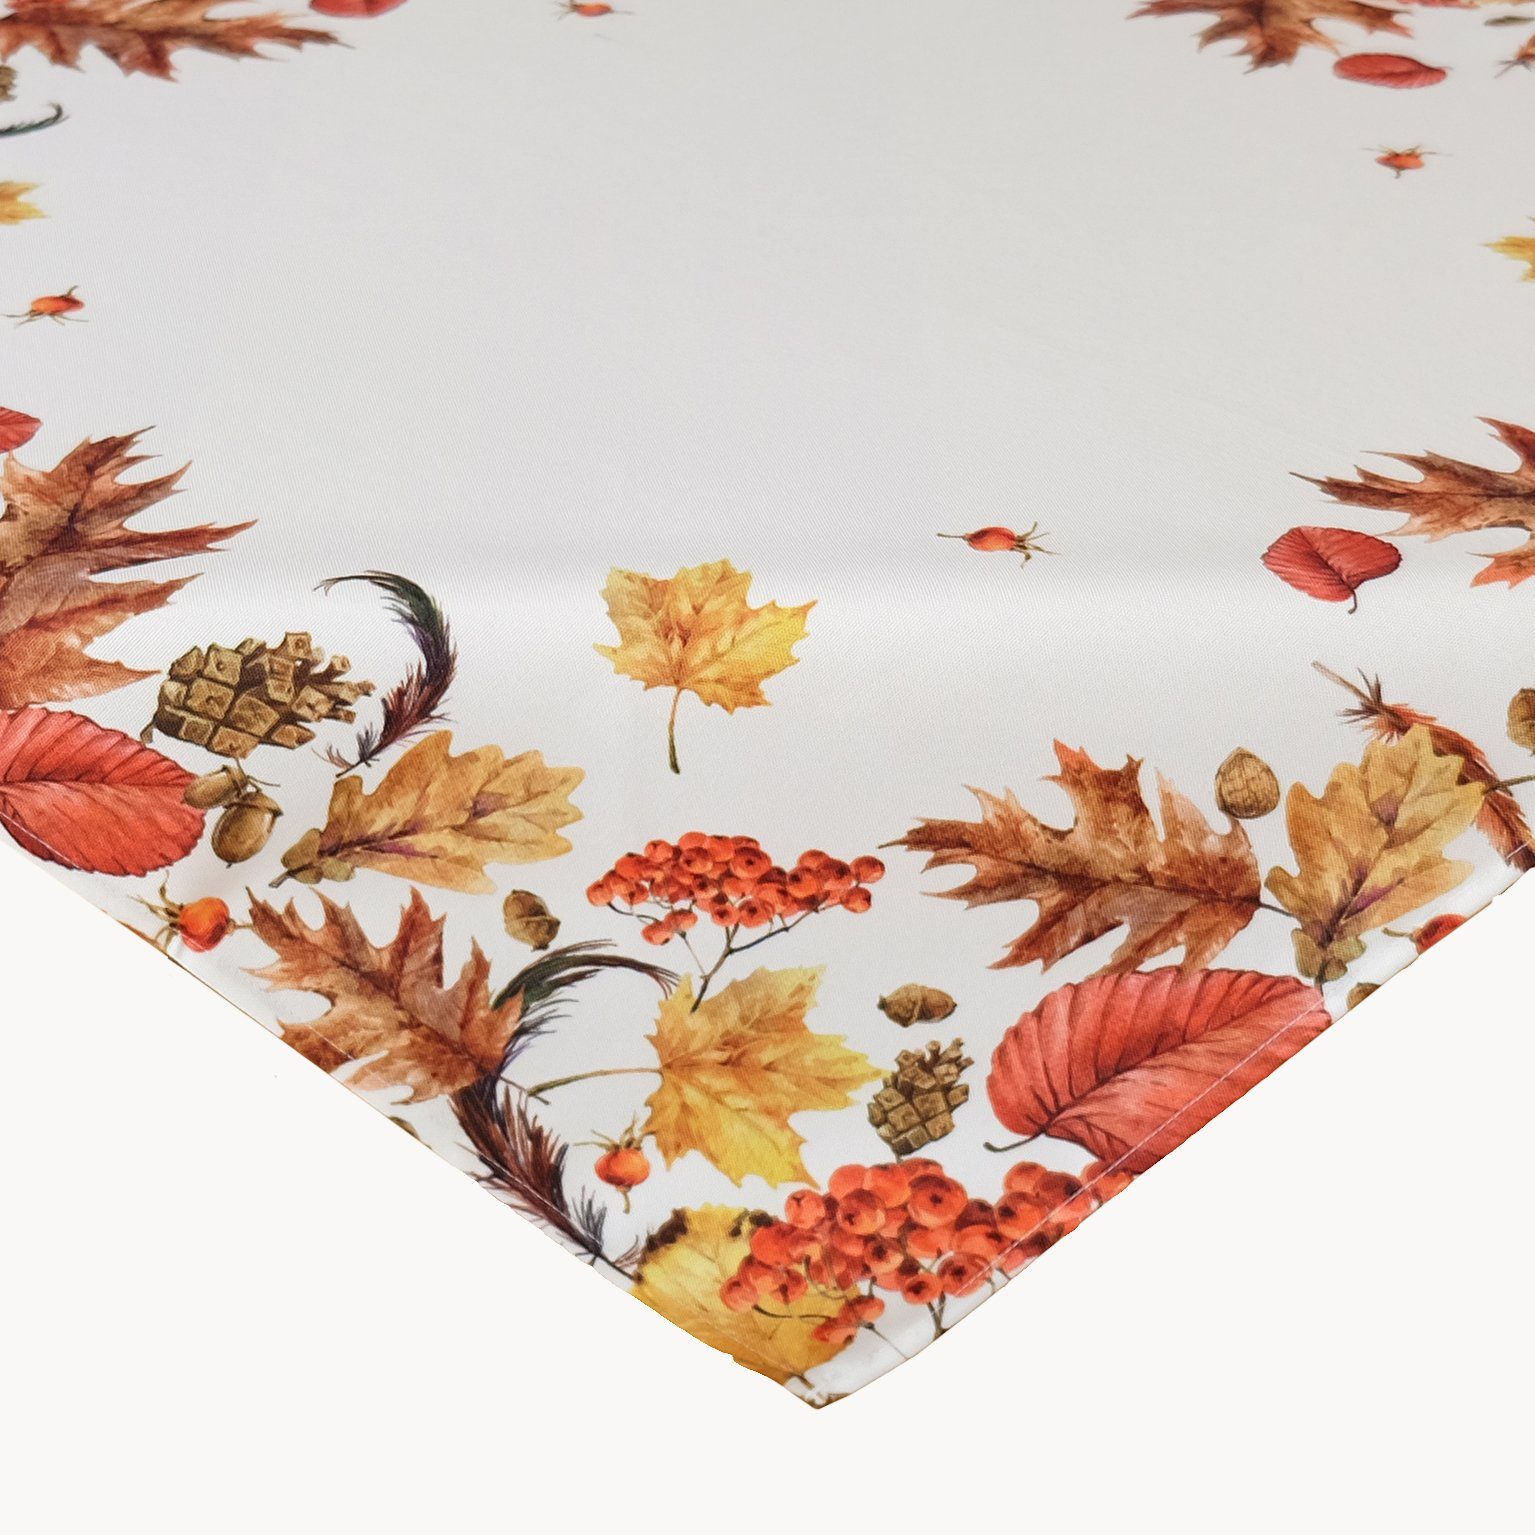 TextilDepot24 Tischdecke für den Herbst mit Blättern - Creme Weiß Beige Bunt Bedruckt Tischdeko, bedruckt